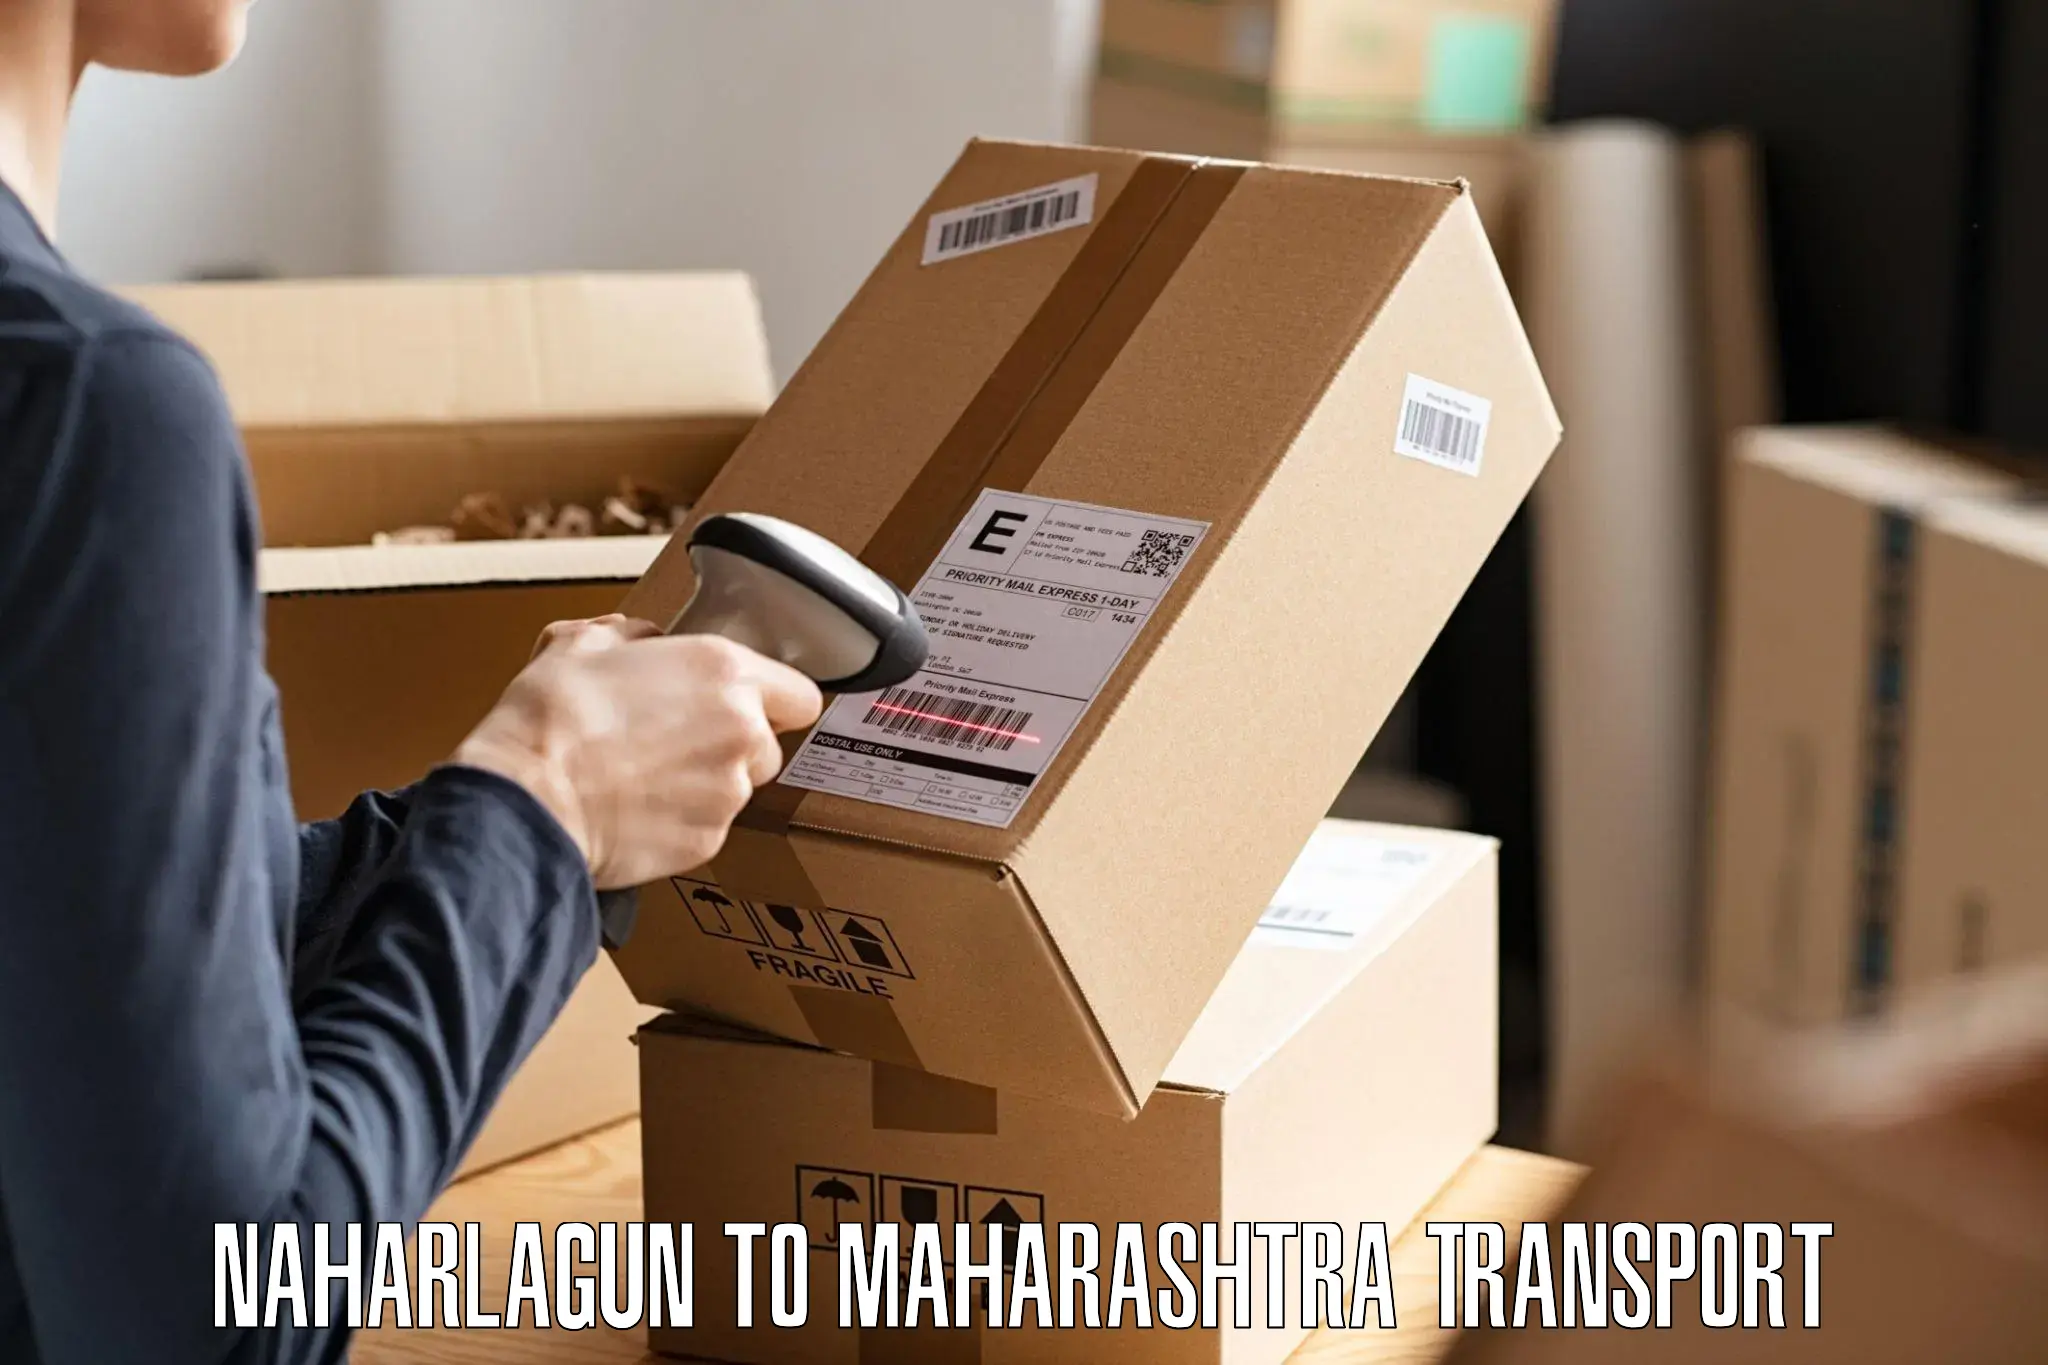 Furniture transport service Naharlagun to Pandharpur